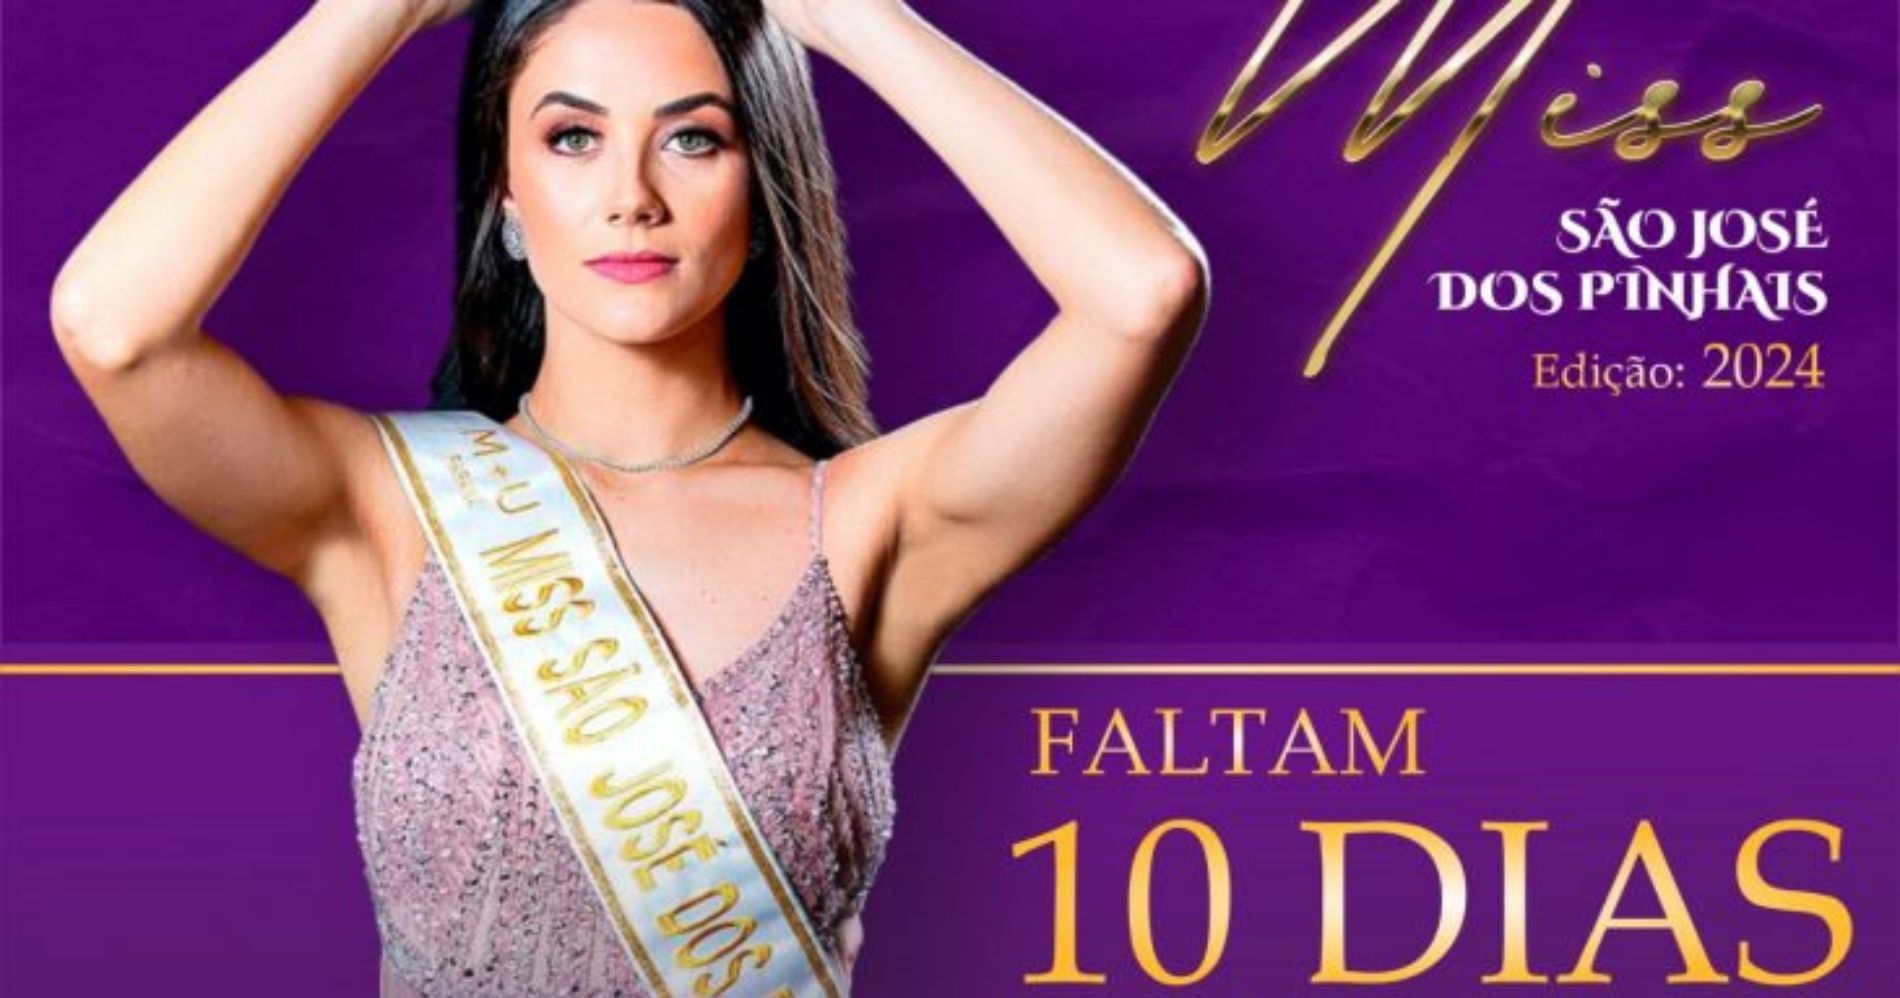 Inscrições Para O Miss São José Dos Pinhais 2024 Estão Abertas Até 20 De Agosto Jornal União 5311